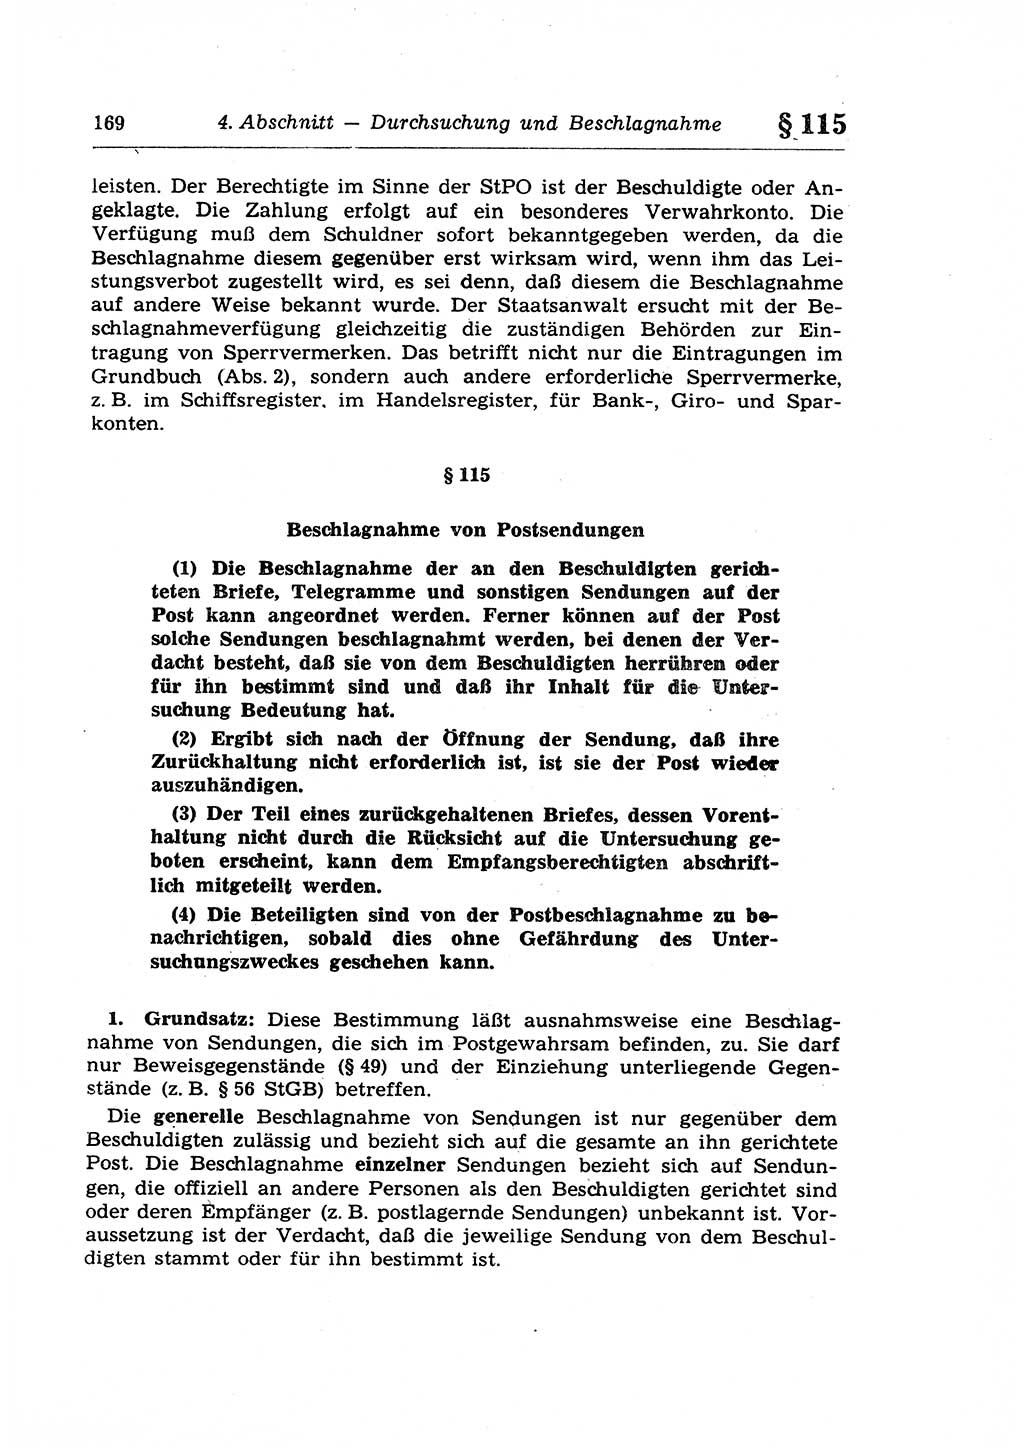 Strafprozeßrecht der DDR (Deutsche Demokratische Republik), Lehrkommentar zur Strafprozeßordnung (StPO) 1968, Seite 169 (Strafprozeßr. DDR Lehrkomm. StPO 19688, S. 169)